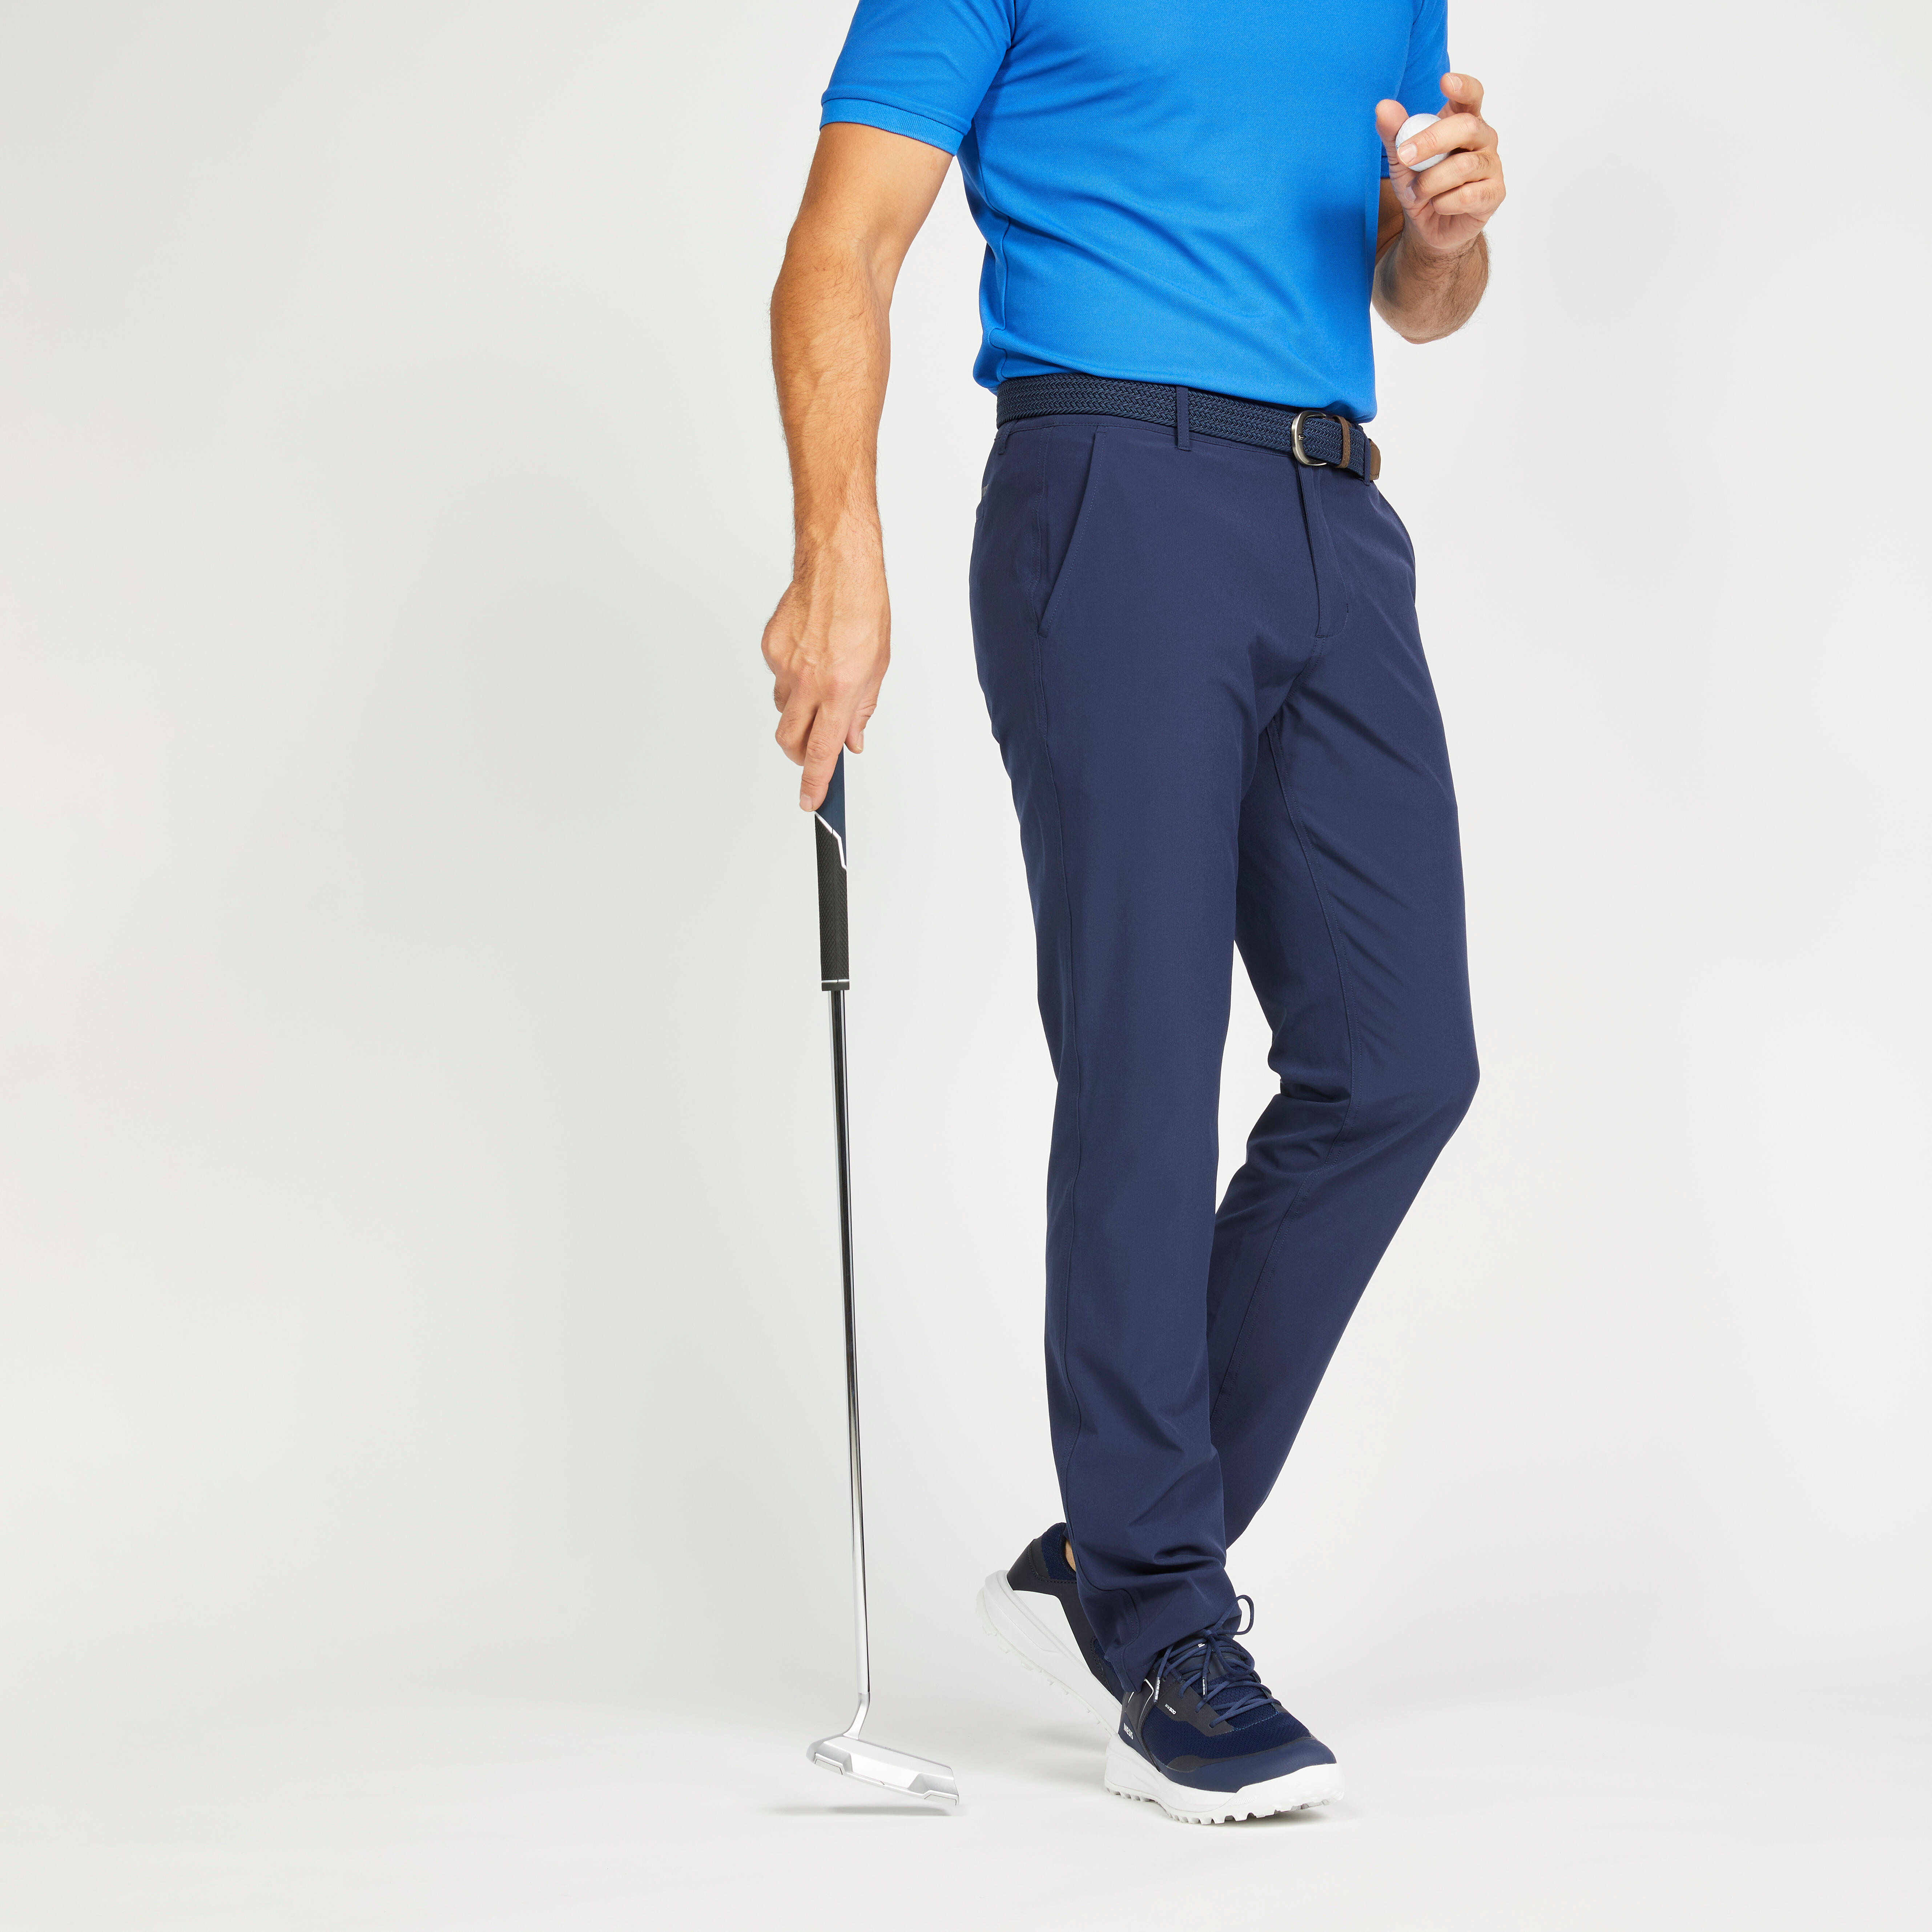 Decathlon | Pantaloni golf uomo WW 500 blu |  Inesis